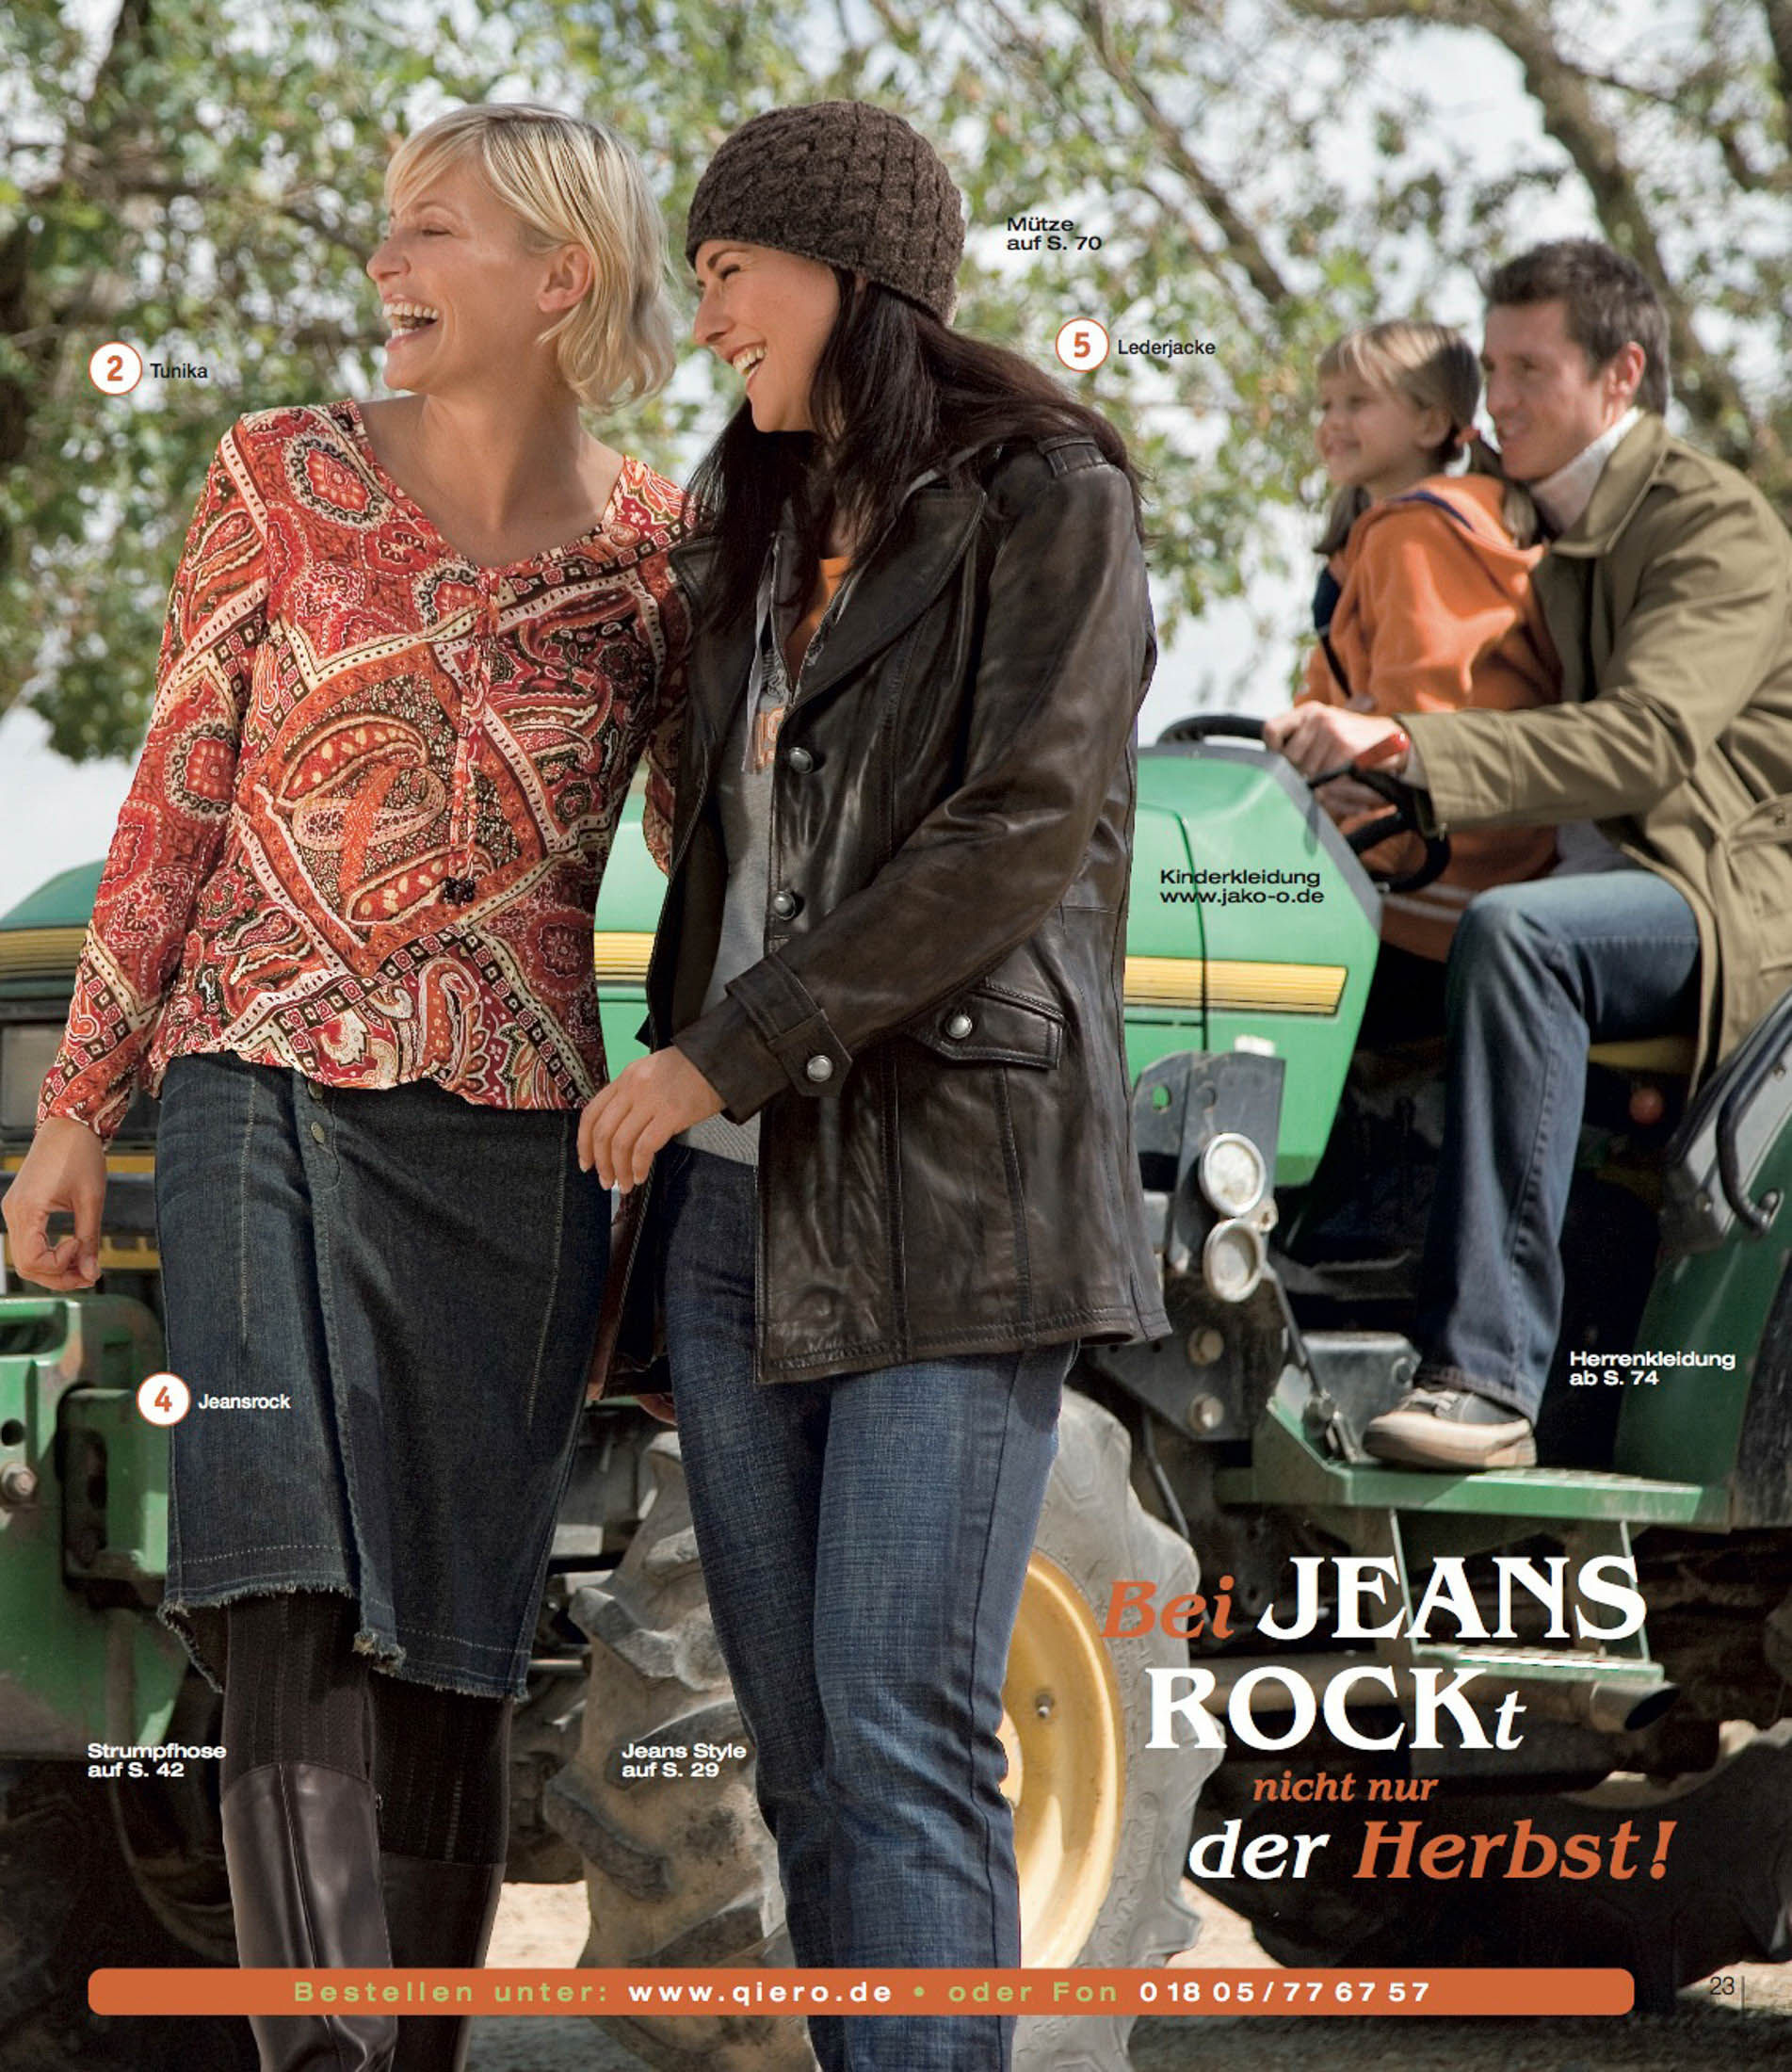 Zwei Frauen, eine trägt ein Paisley-Shirt und Jeans, die andere eine Lederjacke und eine Beanie-Mütze, lachen zusammen neben einem grünen Traktor. Im Hintergrund stehen ein Mann und zwei Kinder, ebenfalls neben dem Traktor. © Fotografie Tomas Rodriguez